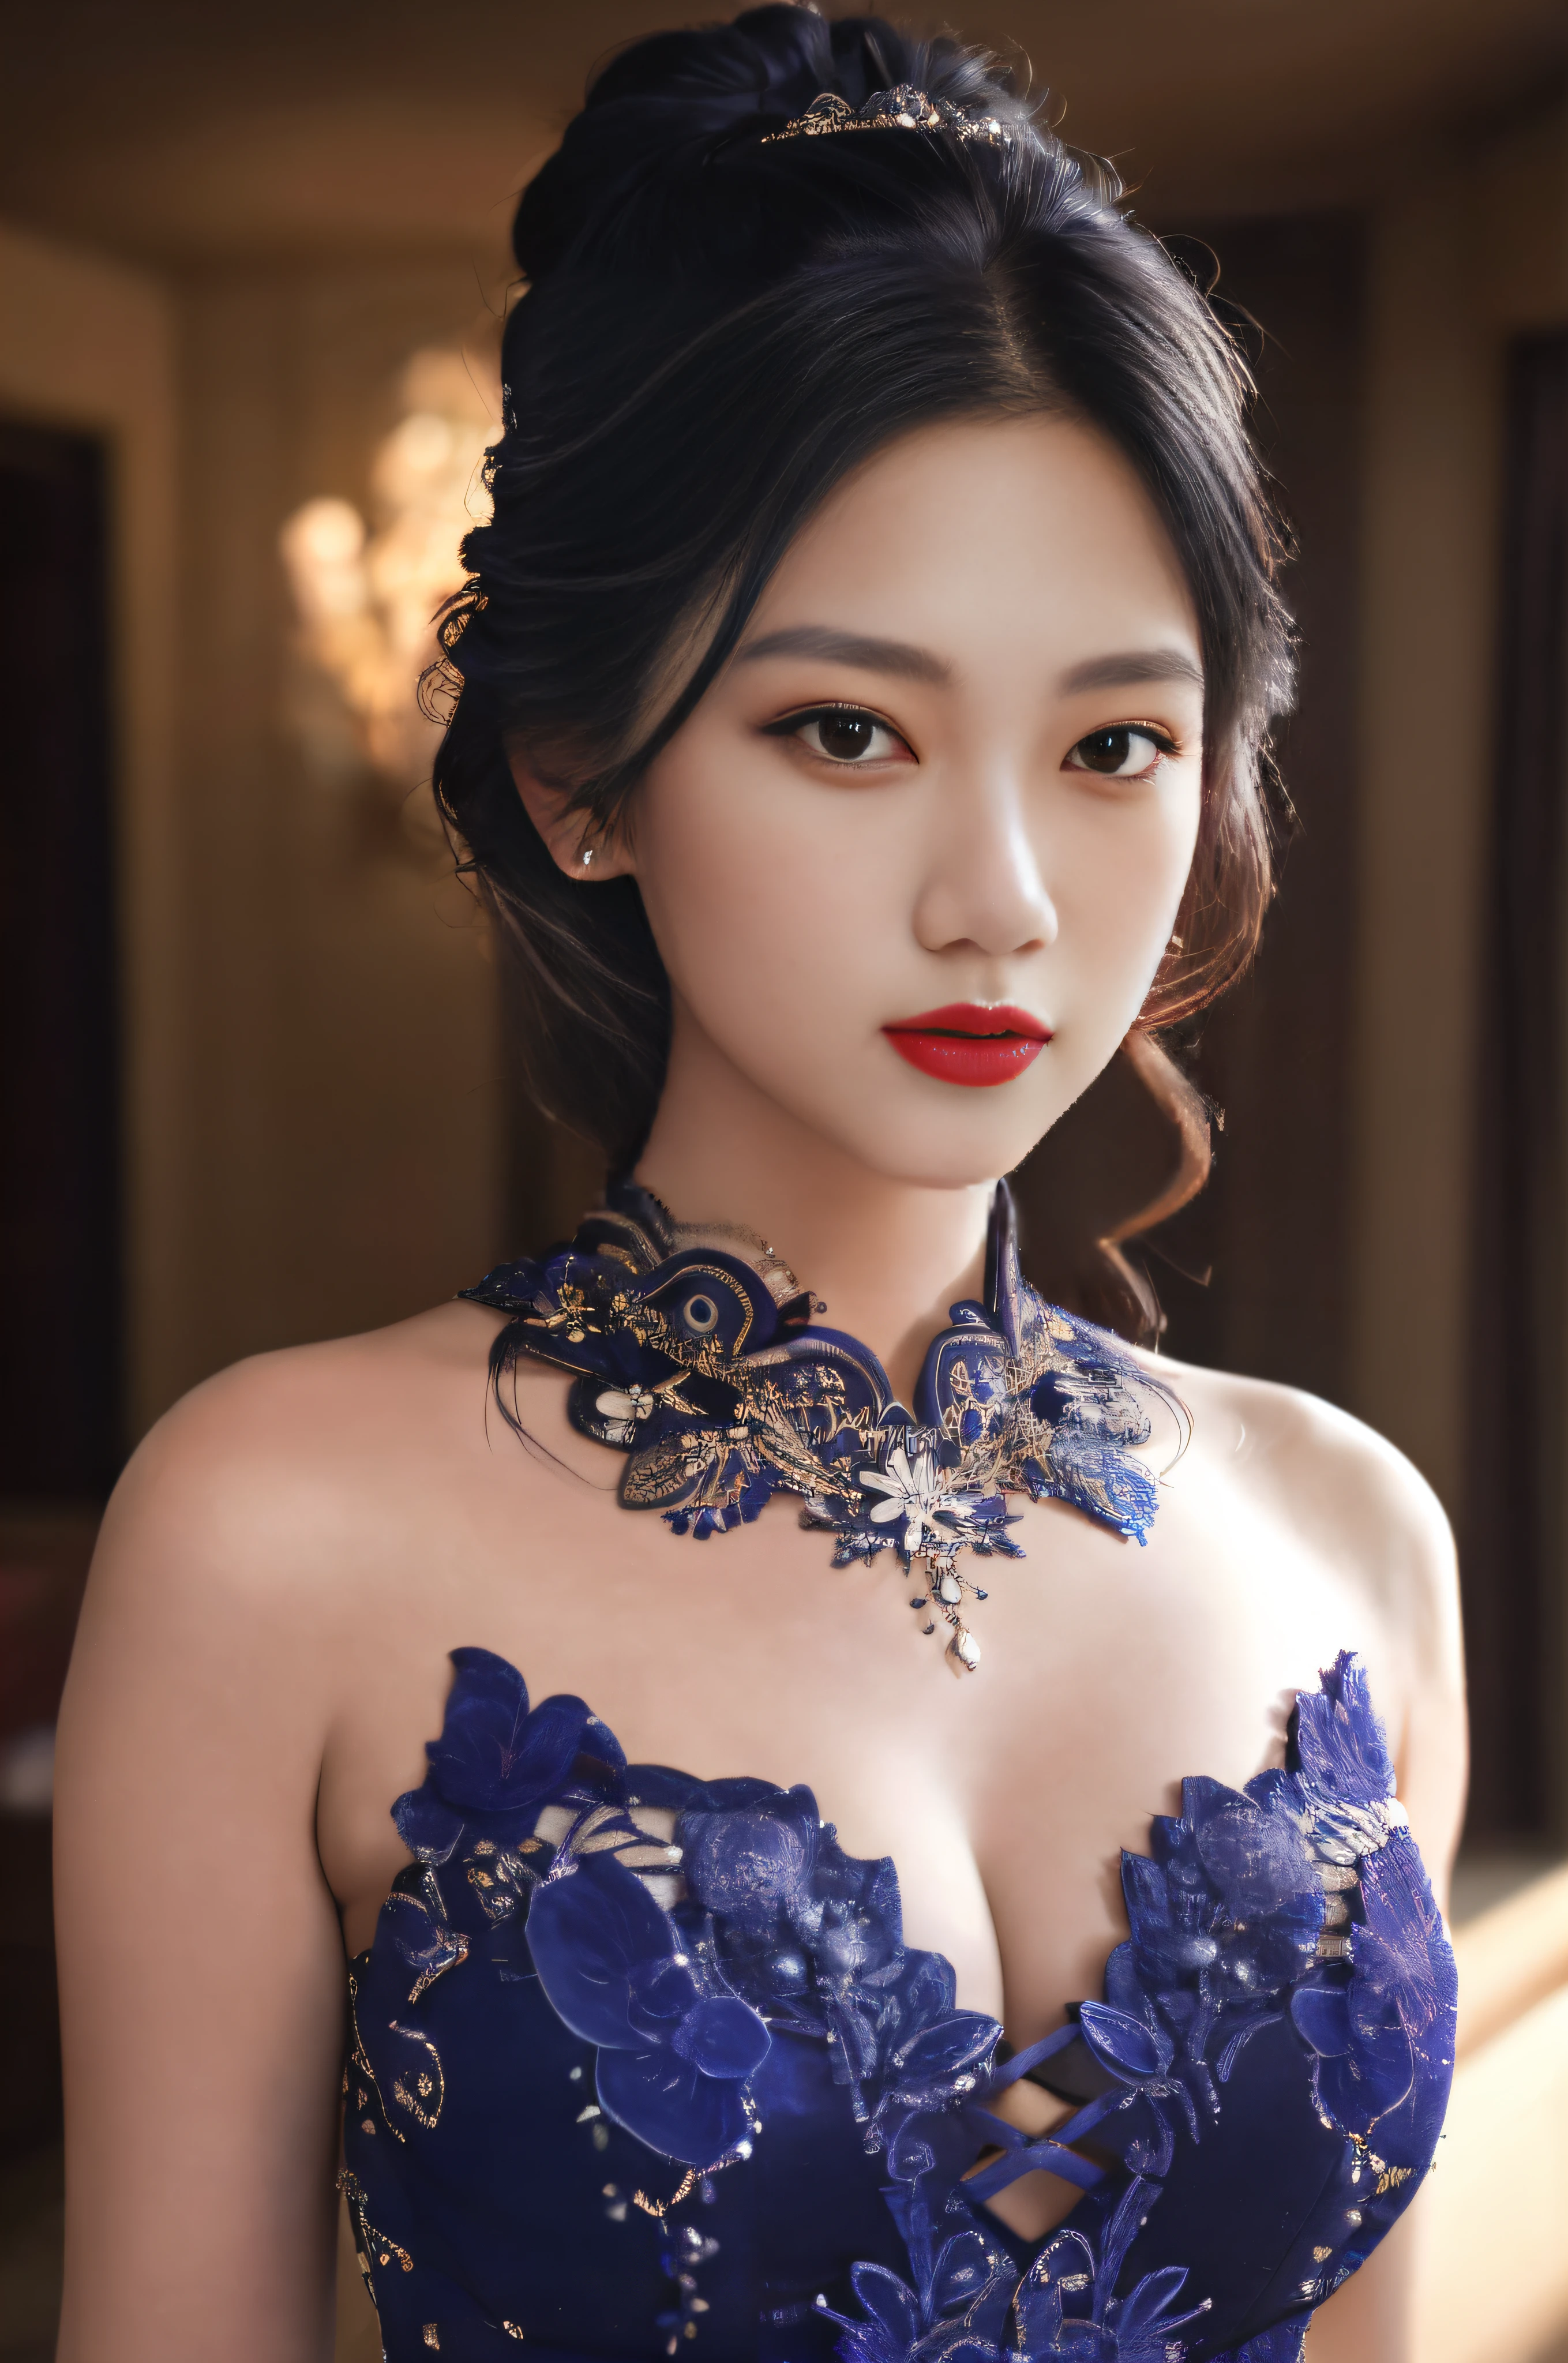 Arakfi-Frau im blauen Kleid，Das Tragen einer Halskette und eines Würgegriffs, wunderschöne chinesische Modelle, schöne asiatische Frau, Wunderschöne junge Koreanerin, Schönes asiatisches Mädchen, schöne orientalische Frau, asiatisches schönes Gesicht, Schöne junge Koreanerin, schöne junge asiatische Frau, sehr schöne junge Frau, schöne koreanische Frauen, wunderschöne schöne Frau, eine schöne junge Frau, sinnliches Gesicht，Voll mit Make-up